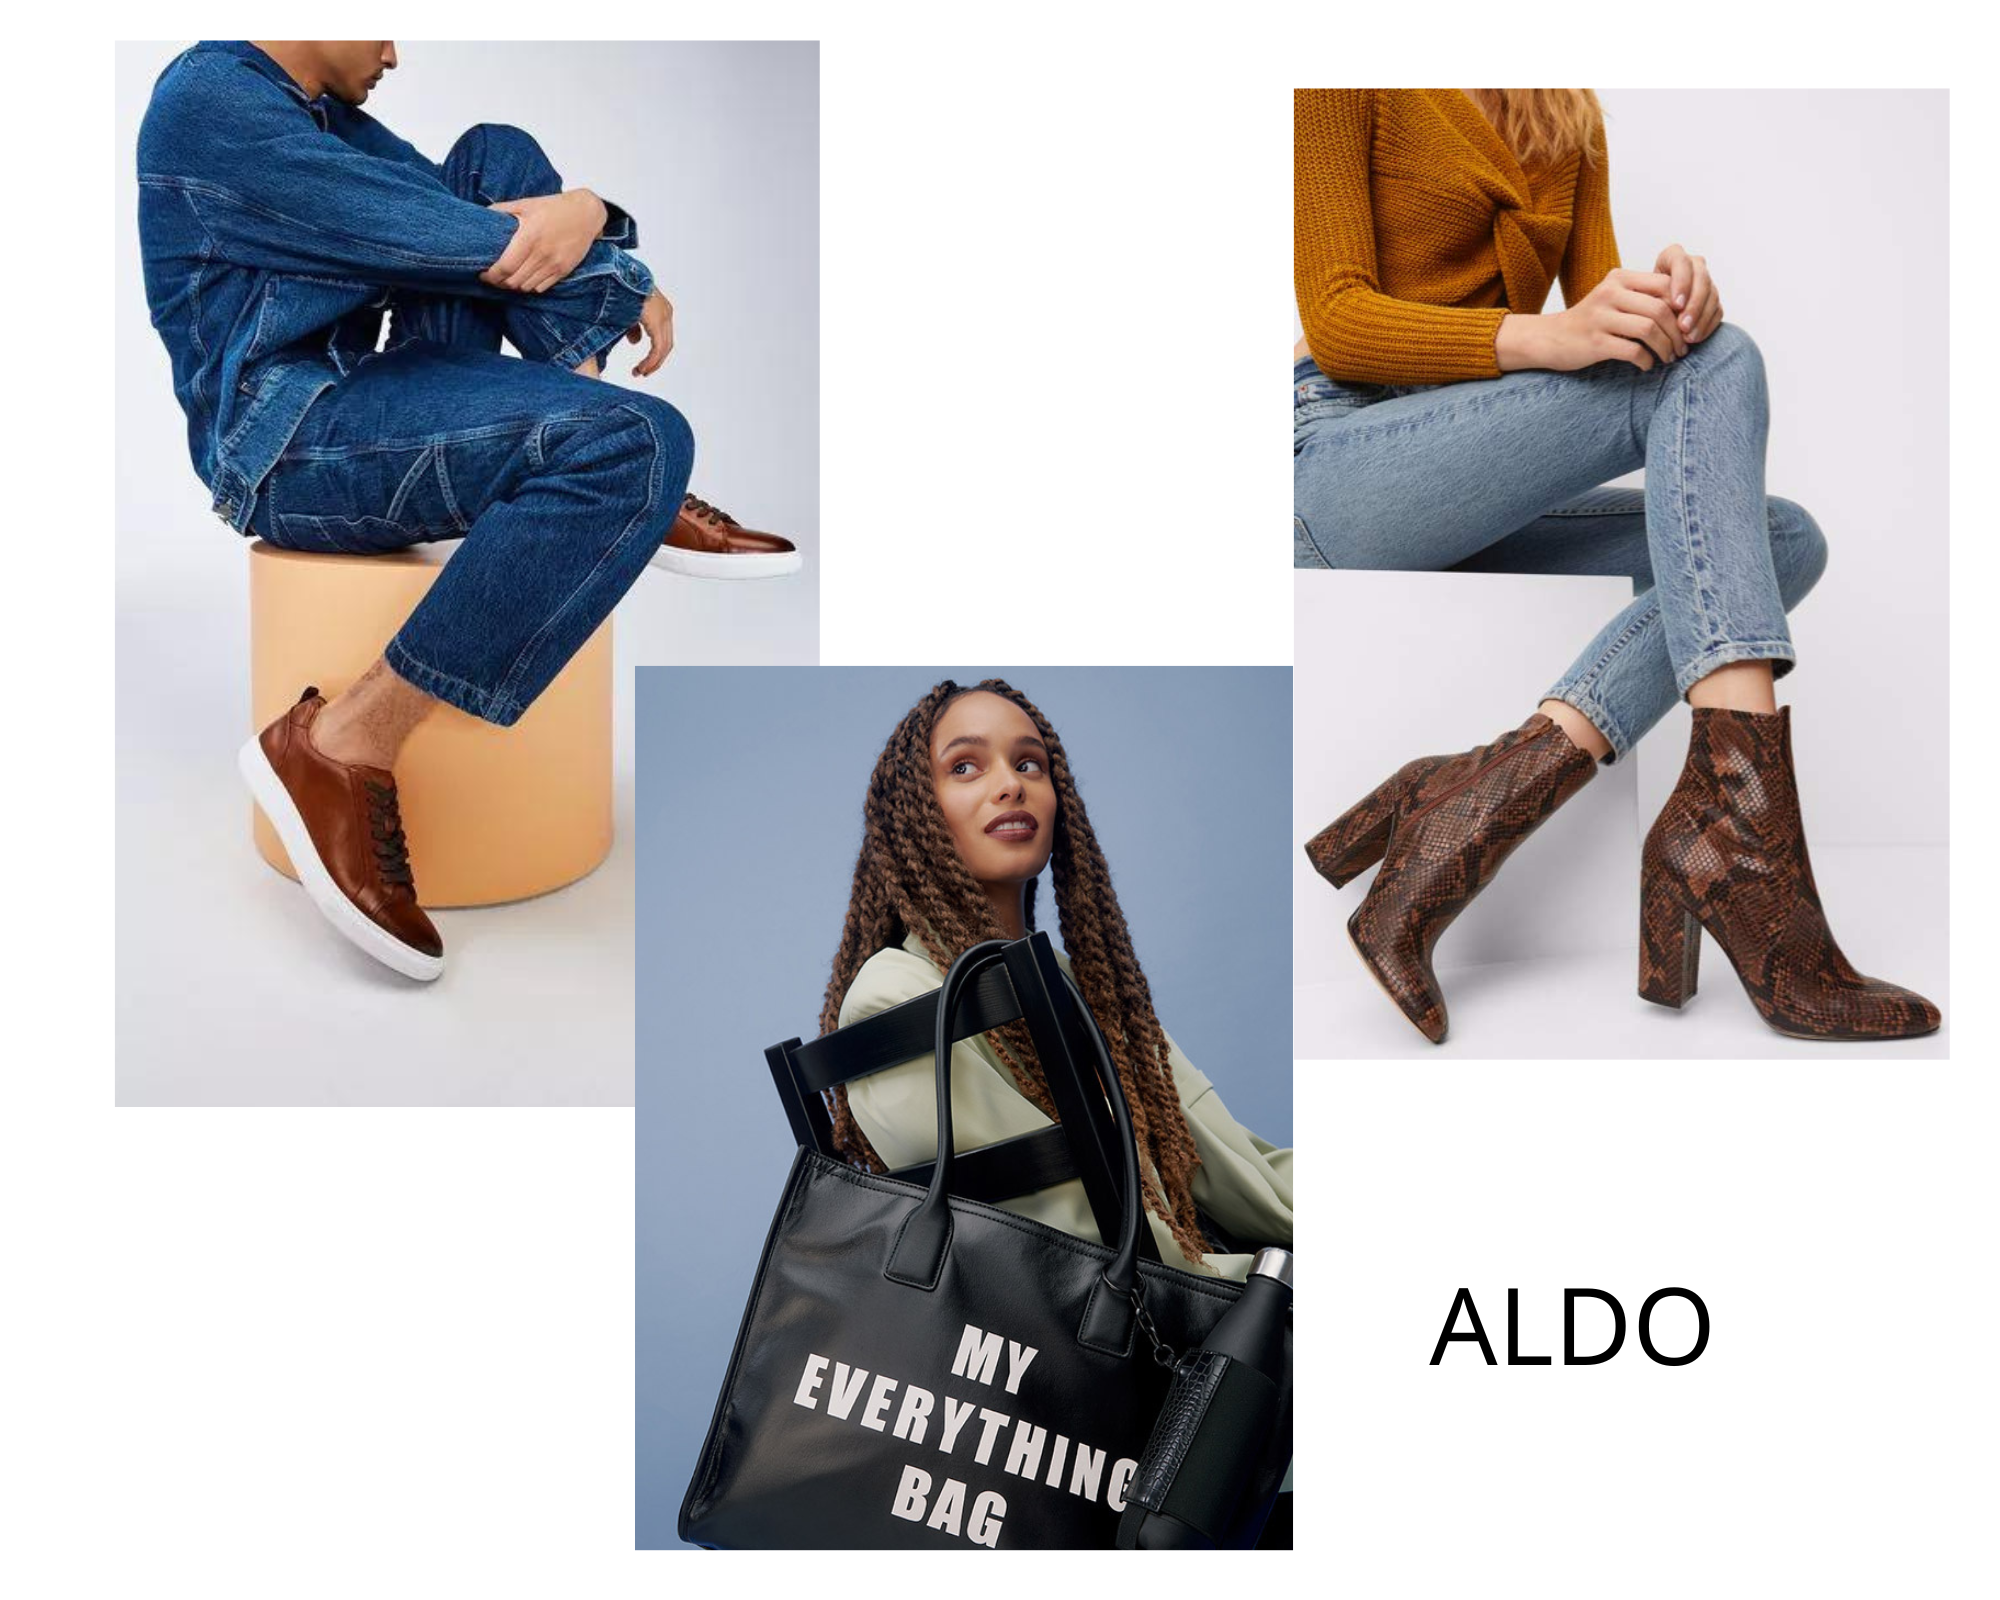 Thời trang Aldo có kiểu dáng đa dạng, phù hợp với mọi lứa tuổi